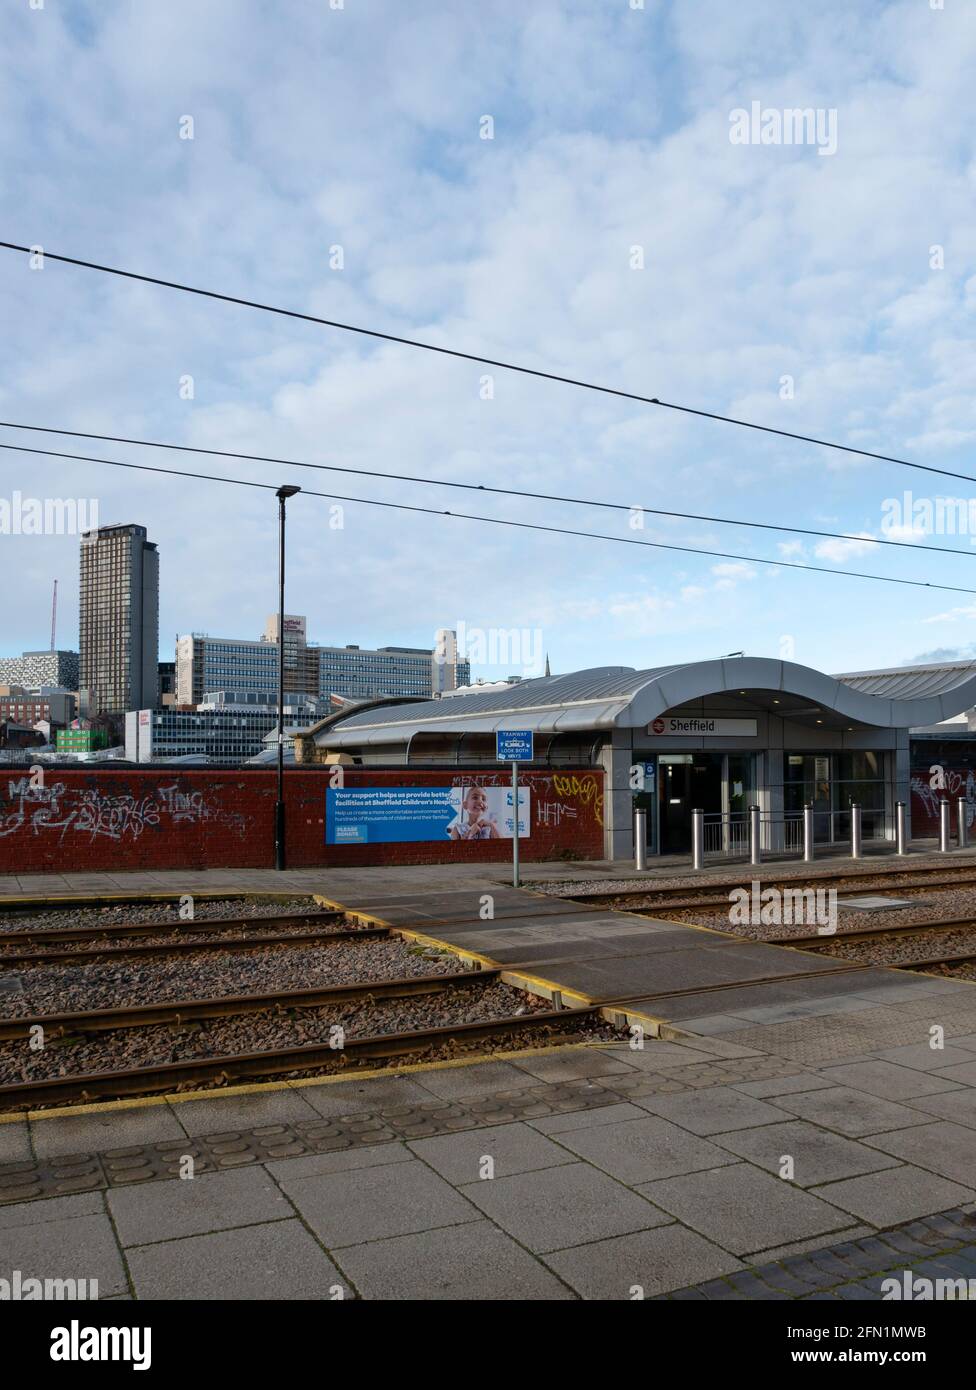 Stazione di Sheffield. Sheffield, South Yorkshire, Inghilterra, Regno Unito. Foto Stock